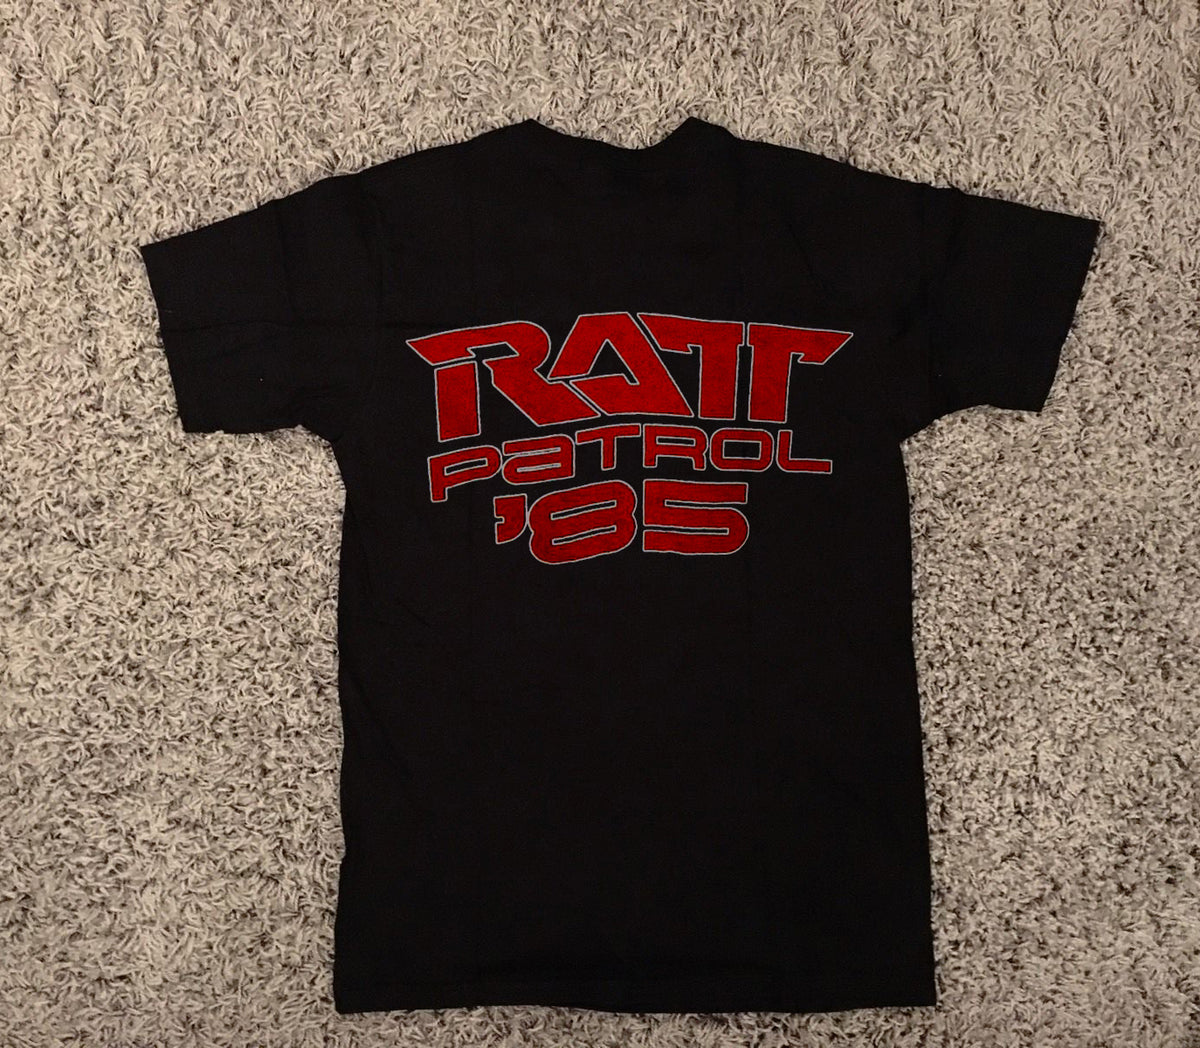 Ratt Attack Ratt Patrol 1985 shirt